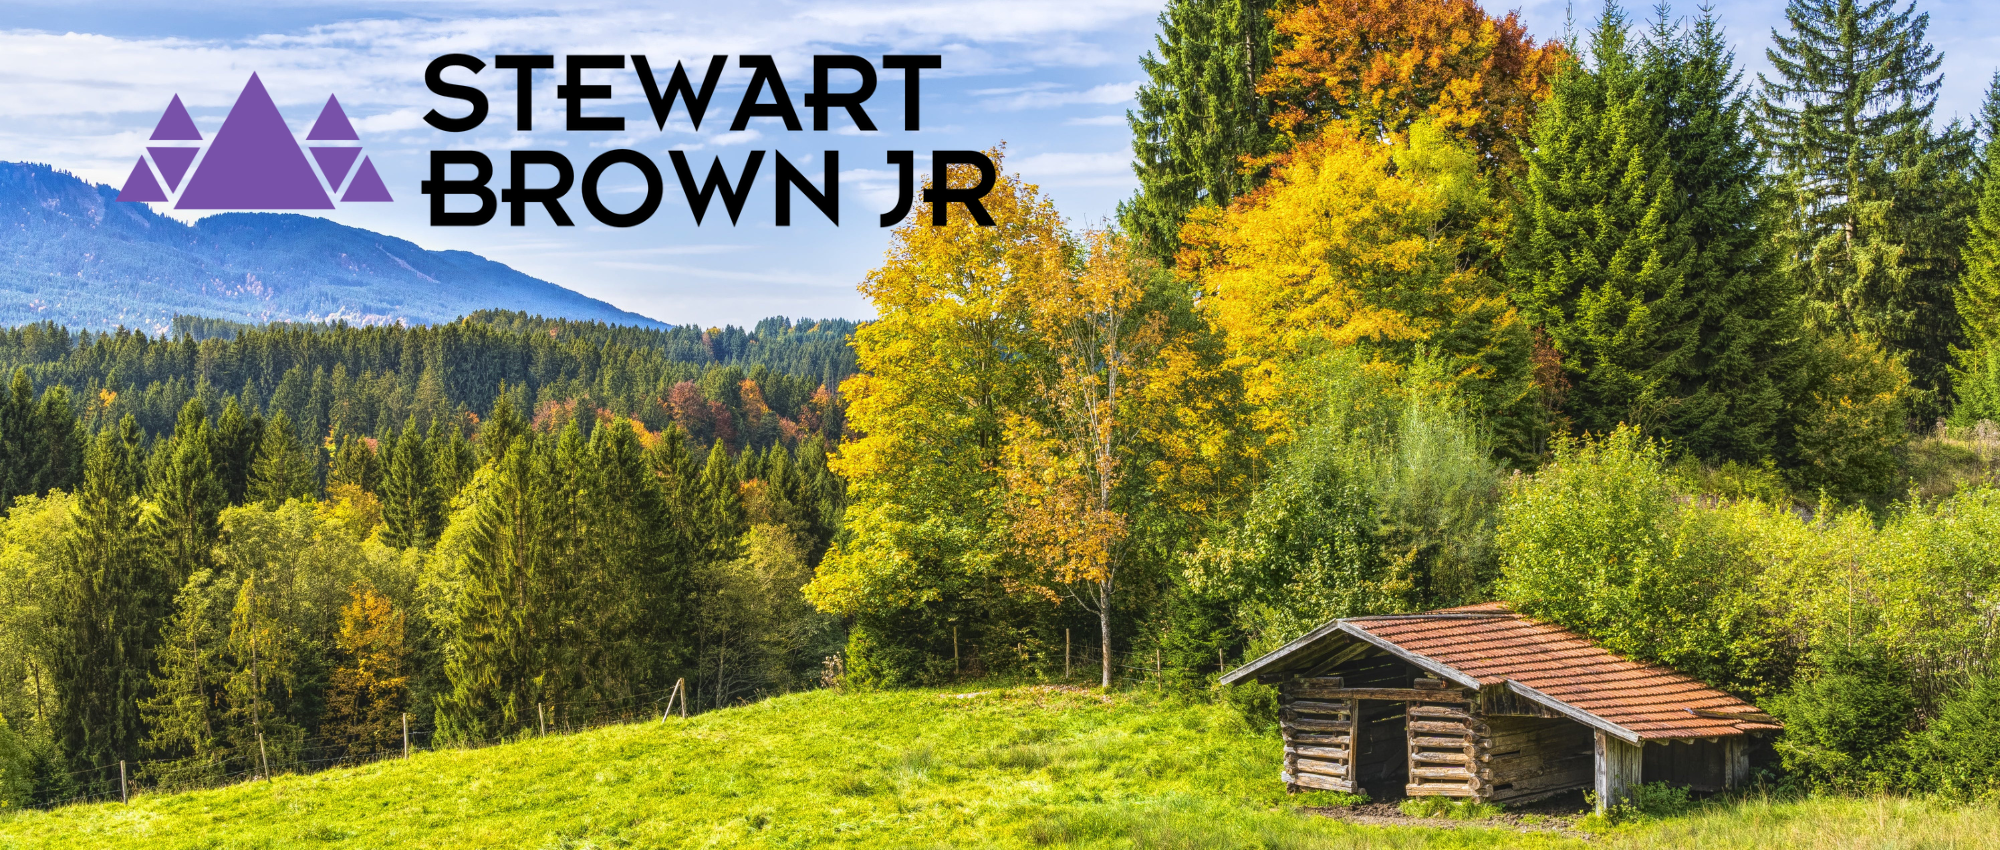 Stewart Brown Jr - About Main